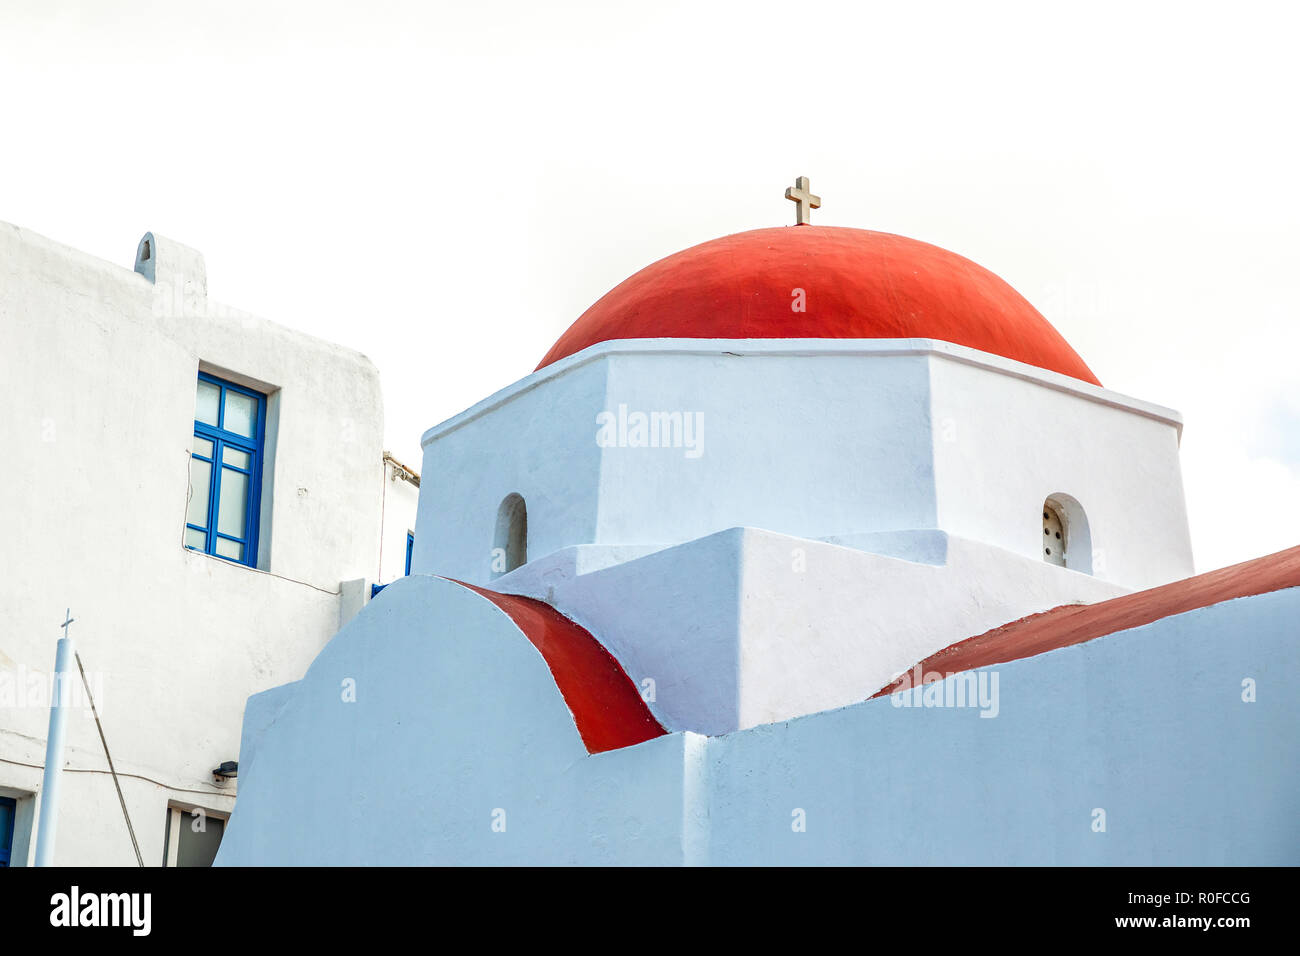 L'église Agia Kyriaki, église grecque typique bâtiment blanc avec dôme rouge contre le ciel bleu sur l'île de Mykonos, Grèce Banque D'Images